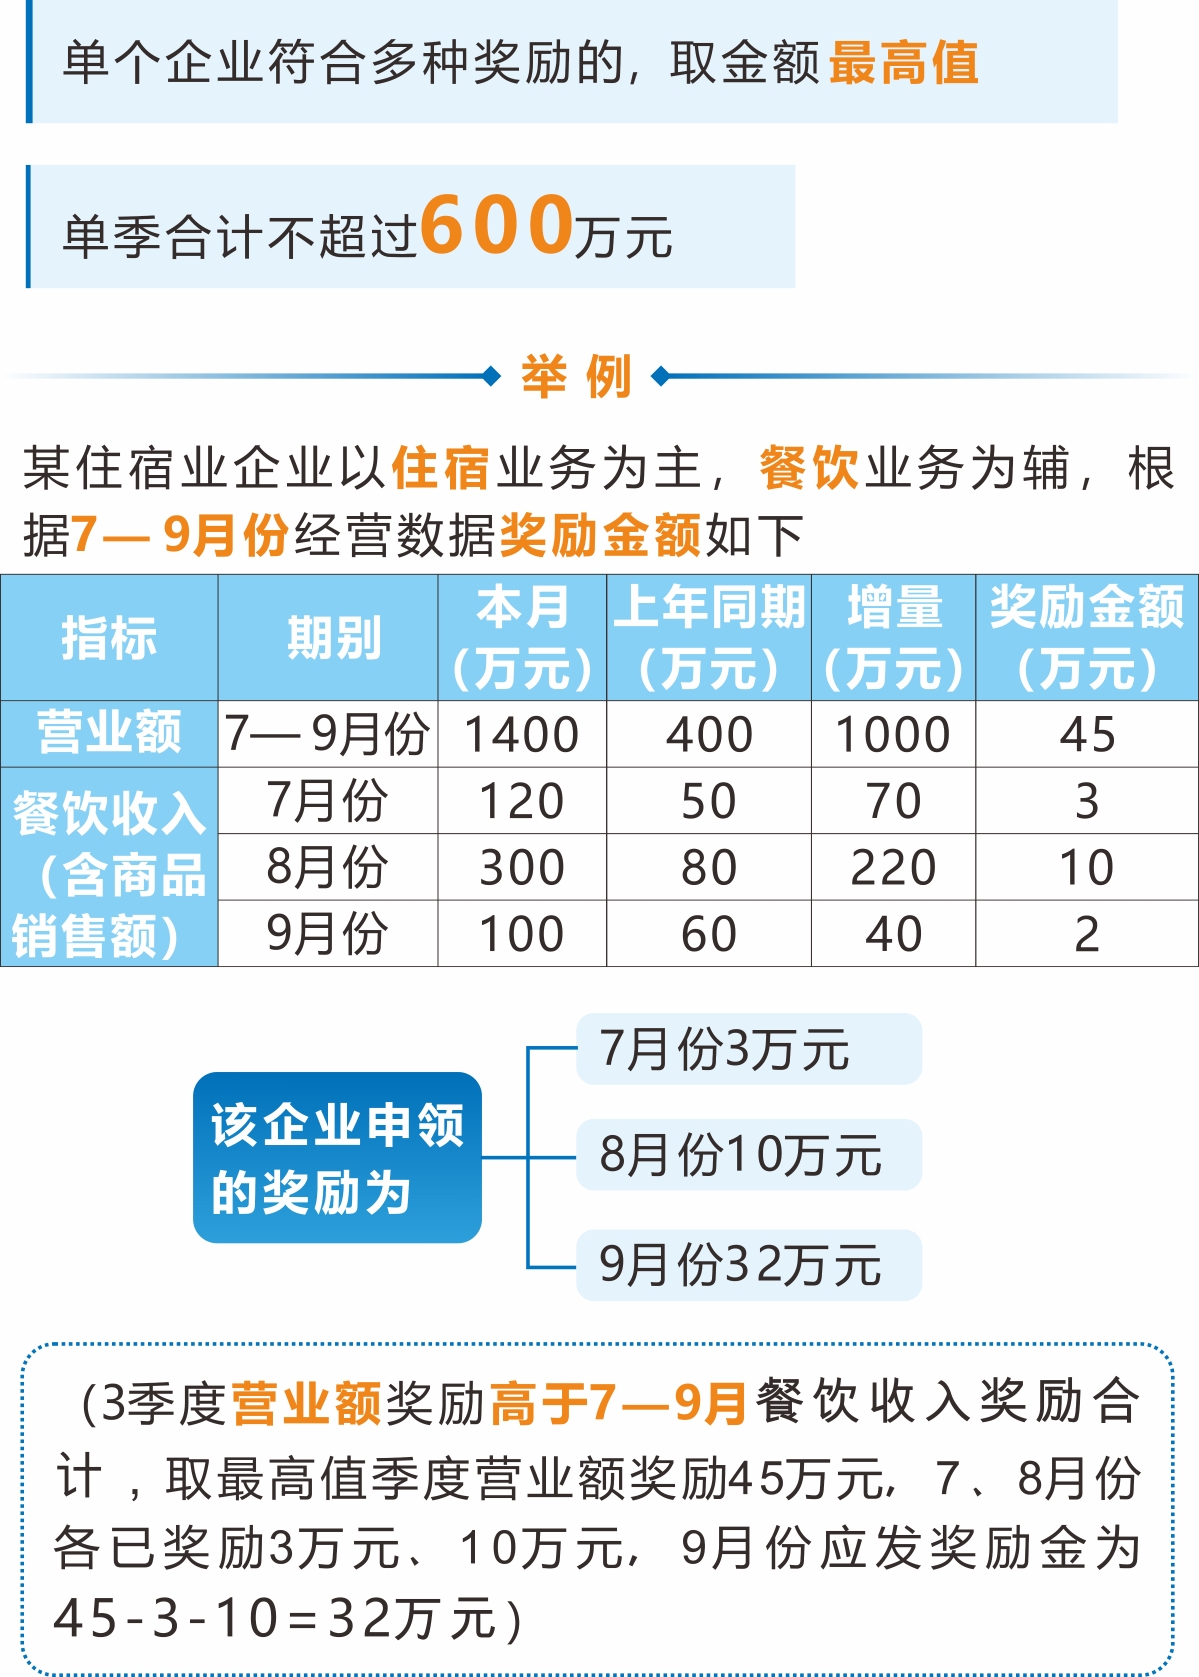 《杭州市商务局关于印发加大批零住餐业支持力度政策实施细则的通知》解读